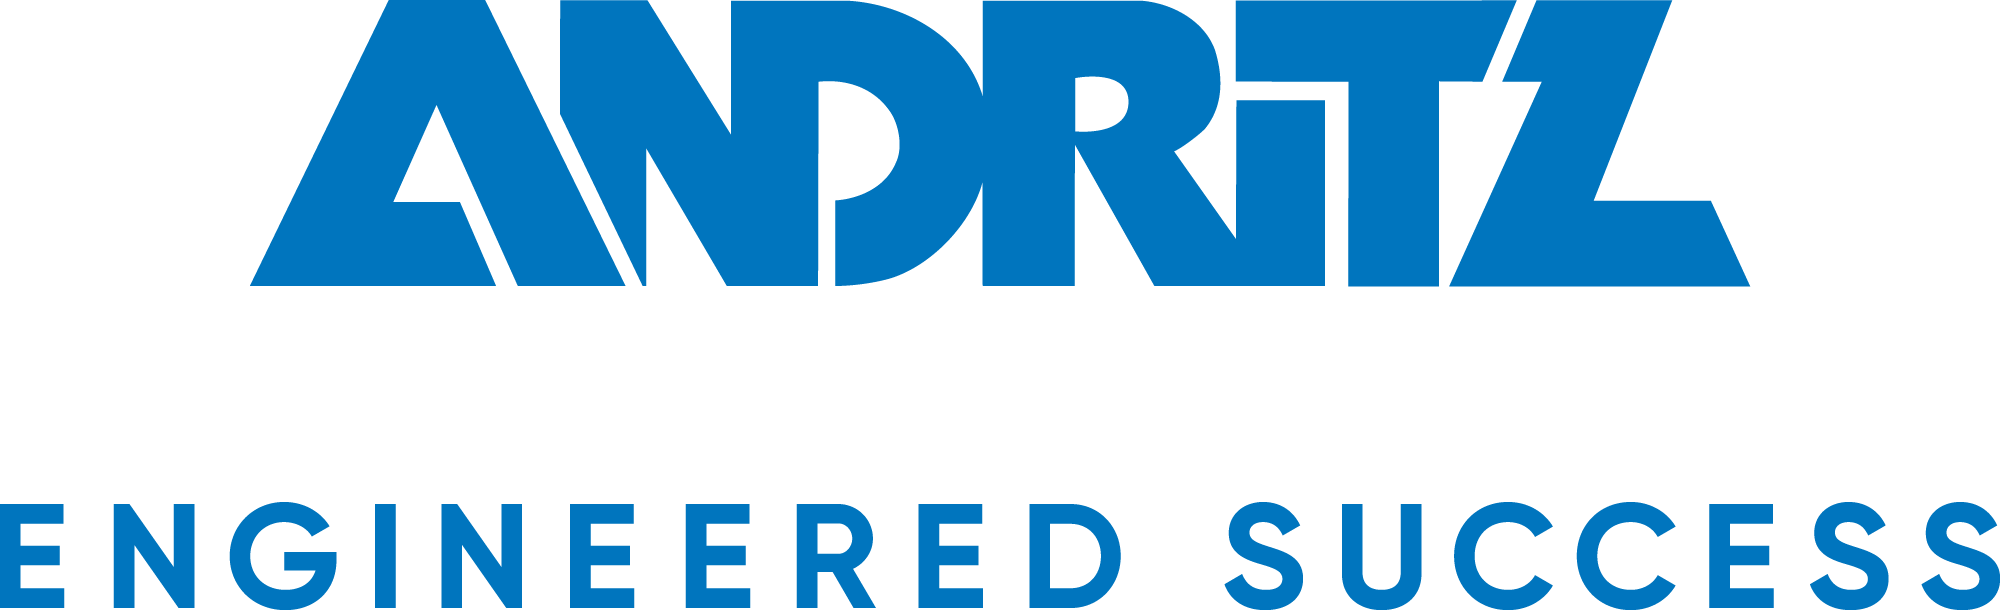 andritz company logo